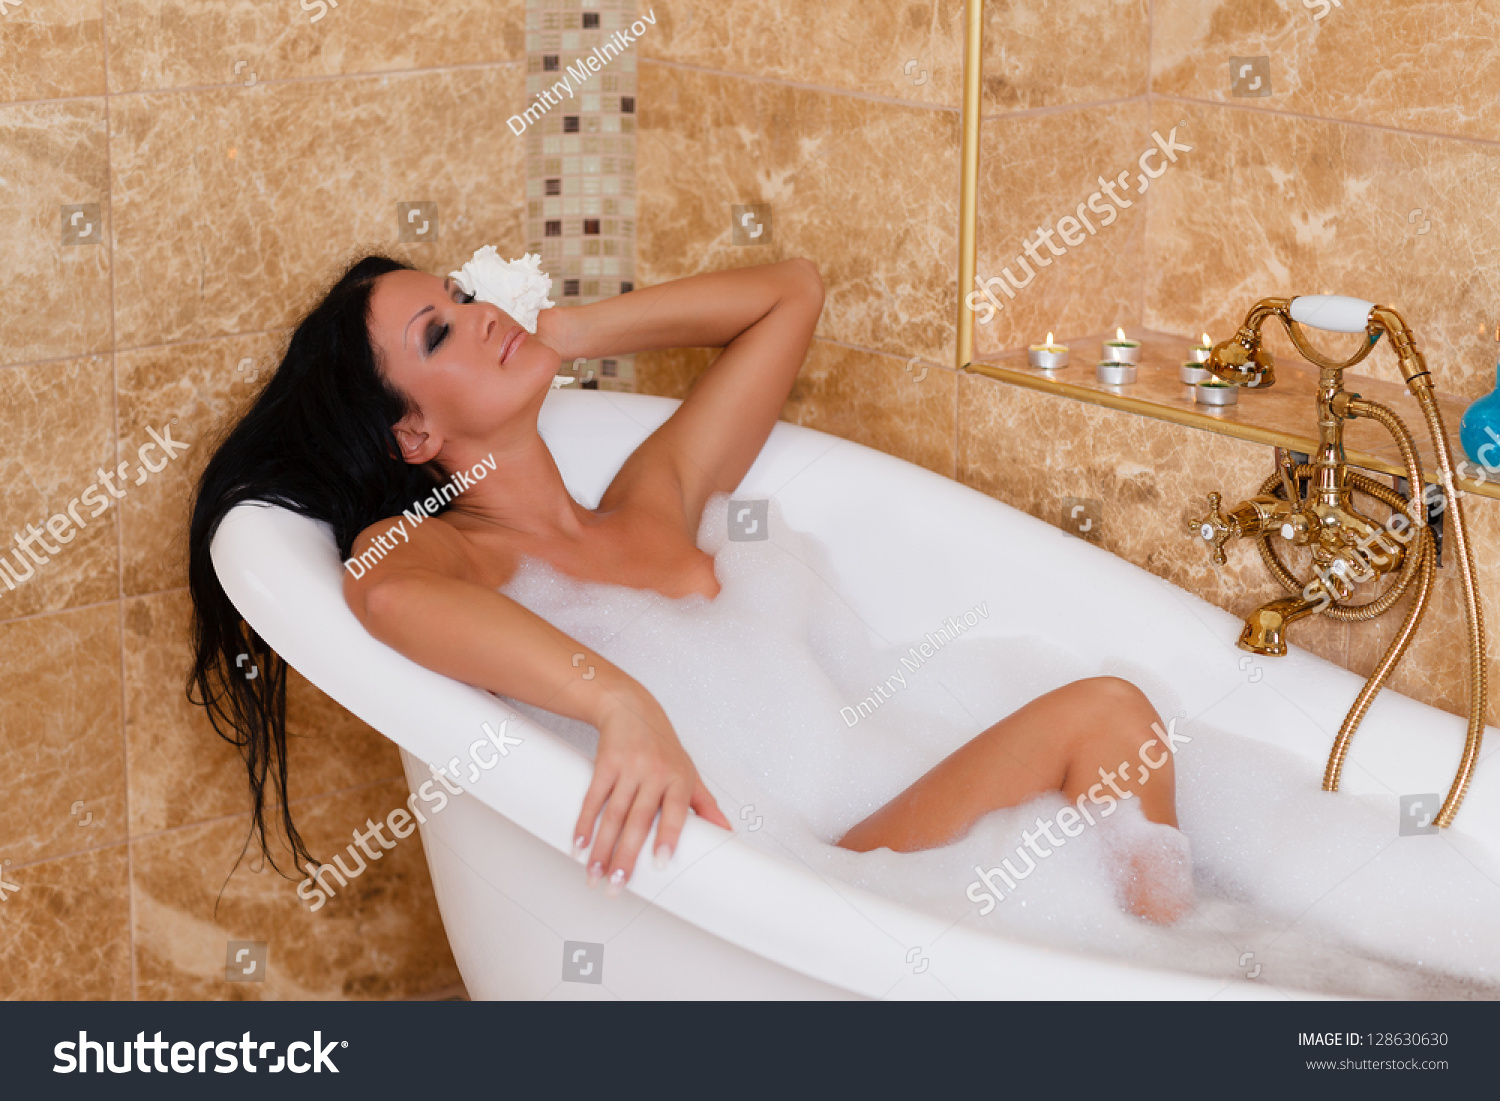 В домашнем видео зрелая и грудастая дамочка разделась и принимает ванную